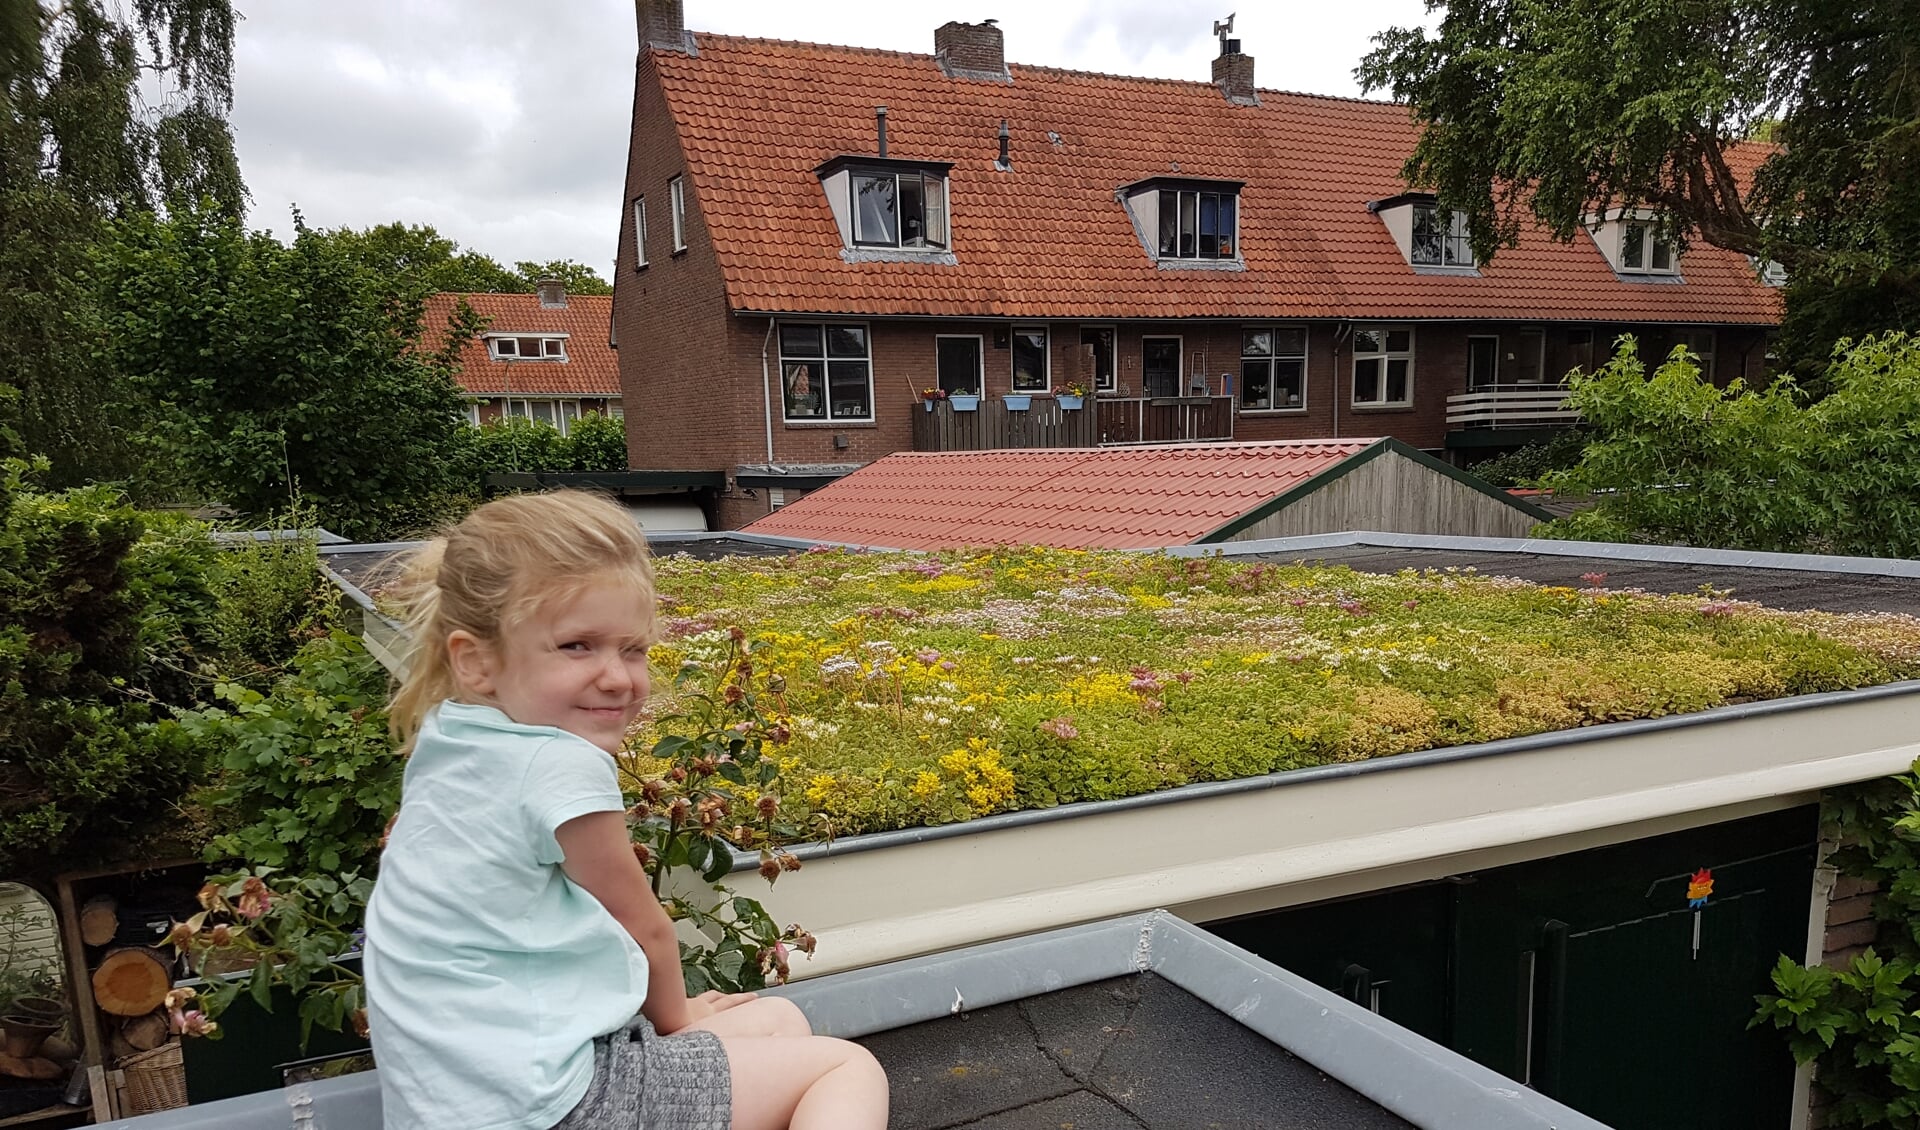 In de provincie Utrecht ligt ongeveer 56 vierkante kilometer dak. 